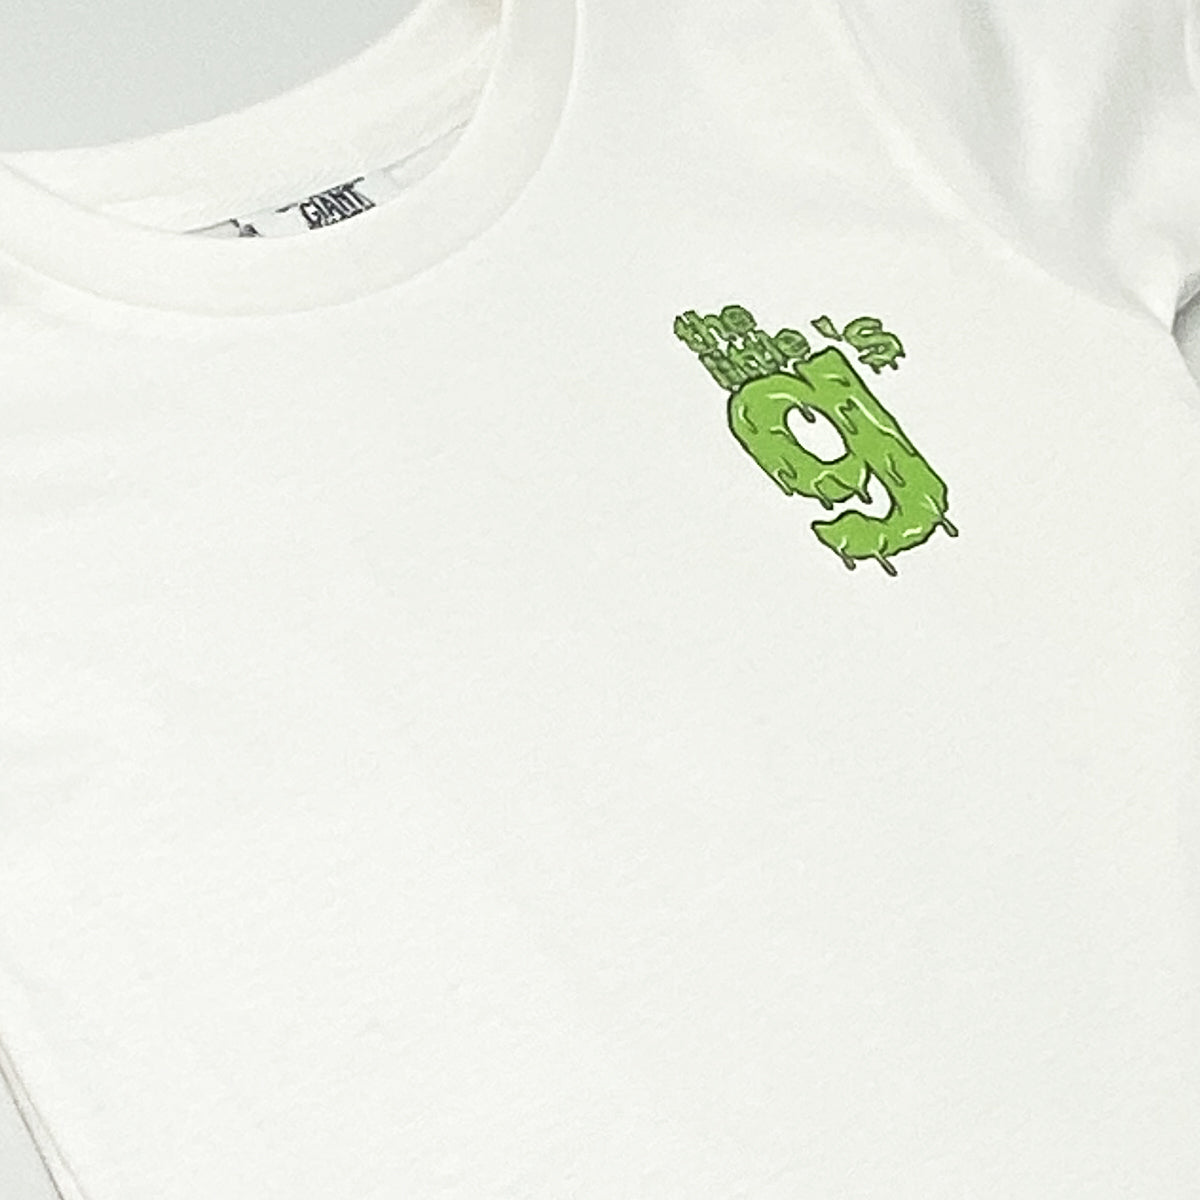 Little g's Lime Slime T-shirt (White)